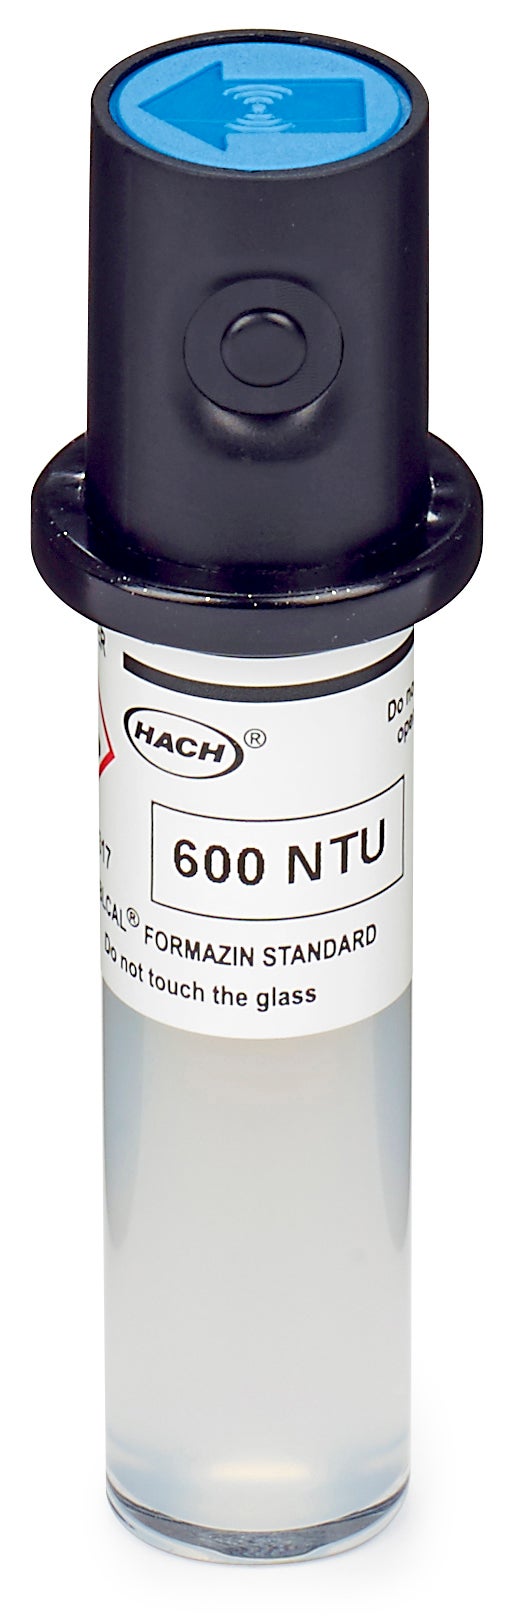 Fiala di taratura Stablcal, 600 NTU, senza RFID per torbidimetri laser TU5200, TU5300sc e TU5400sc